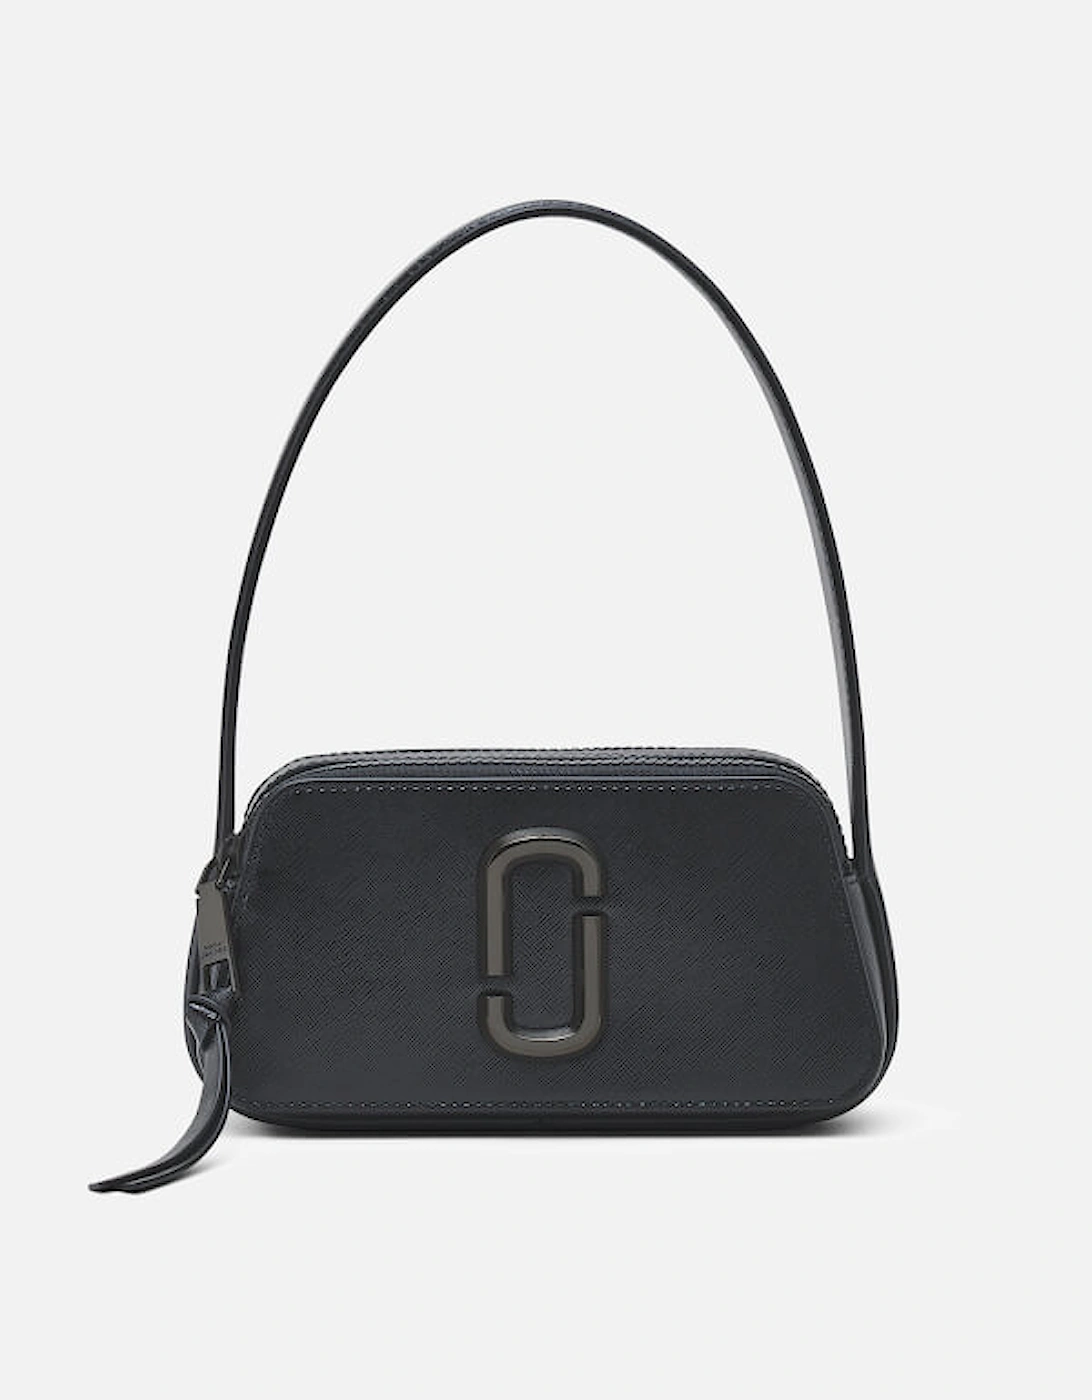 Home - Designer Handbags for Women - Designer Shoulder Bags - The Slingshot DTM Snapshot Leather Bag - - The Slingshot DTM Snapshot Leather Bag, 2 of 1